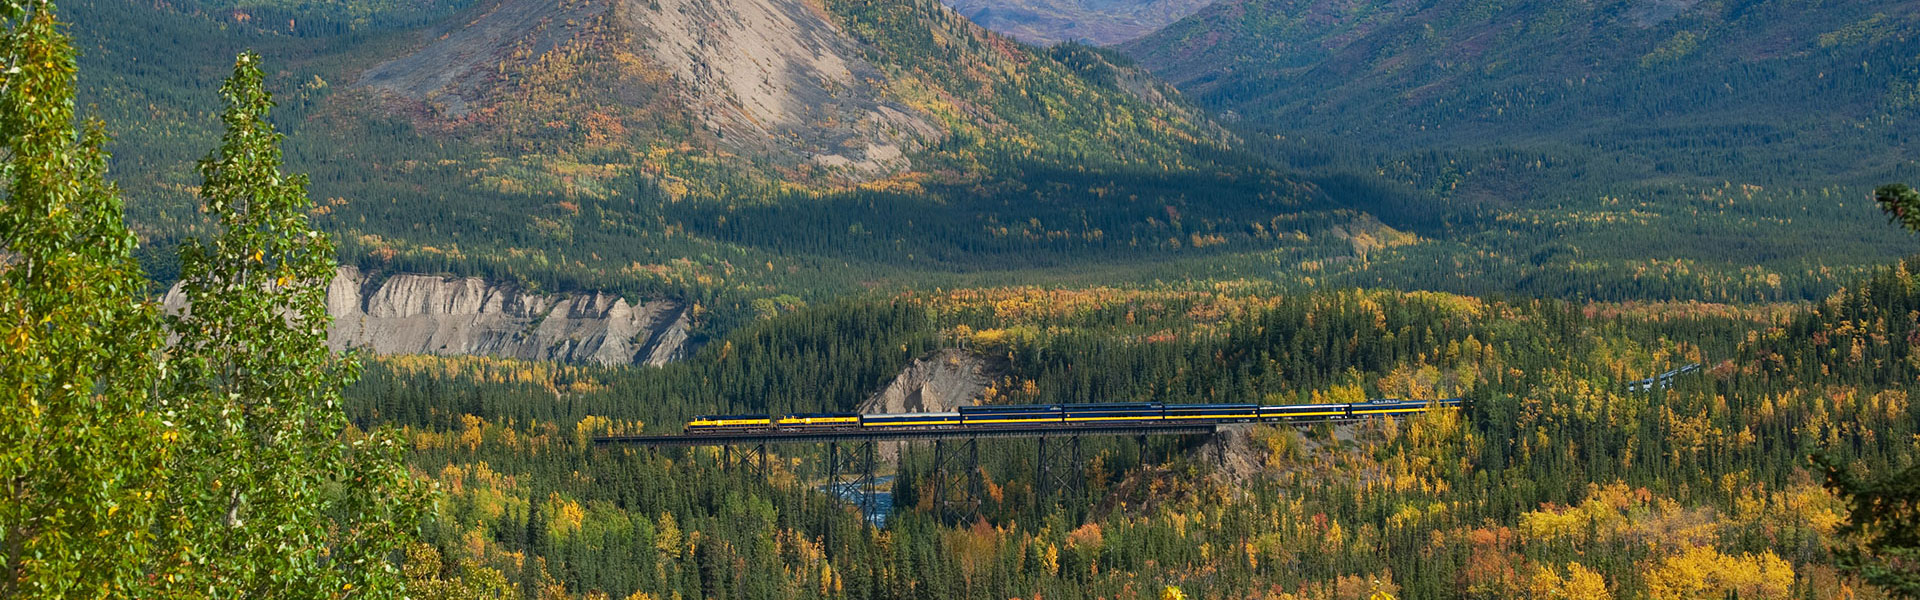 Alaska Train Tours | Best Alaska Rail Trips